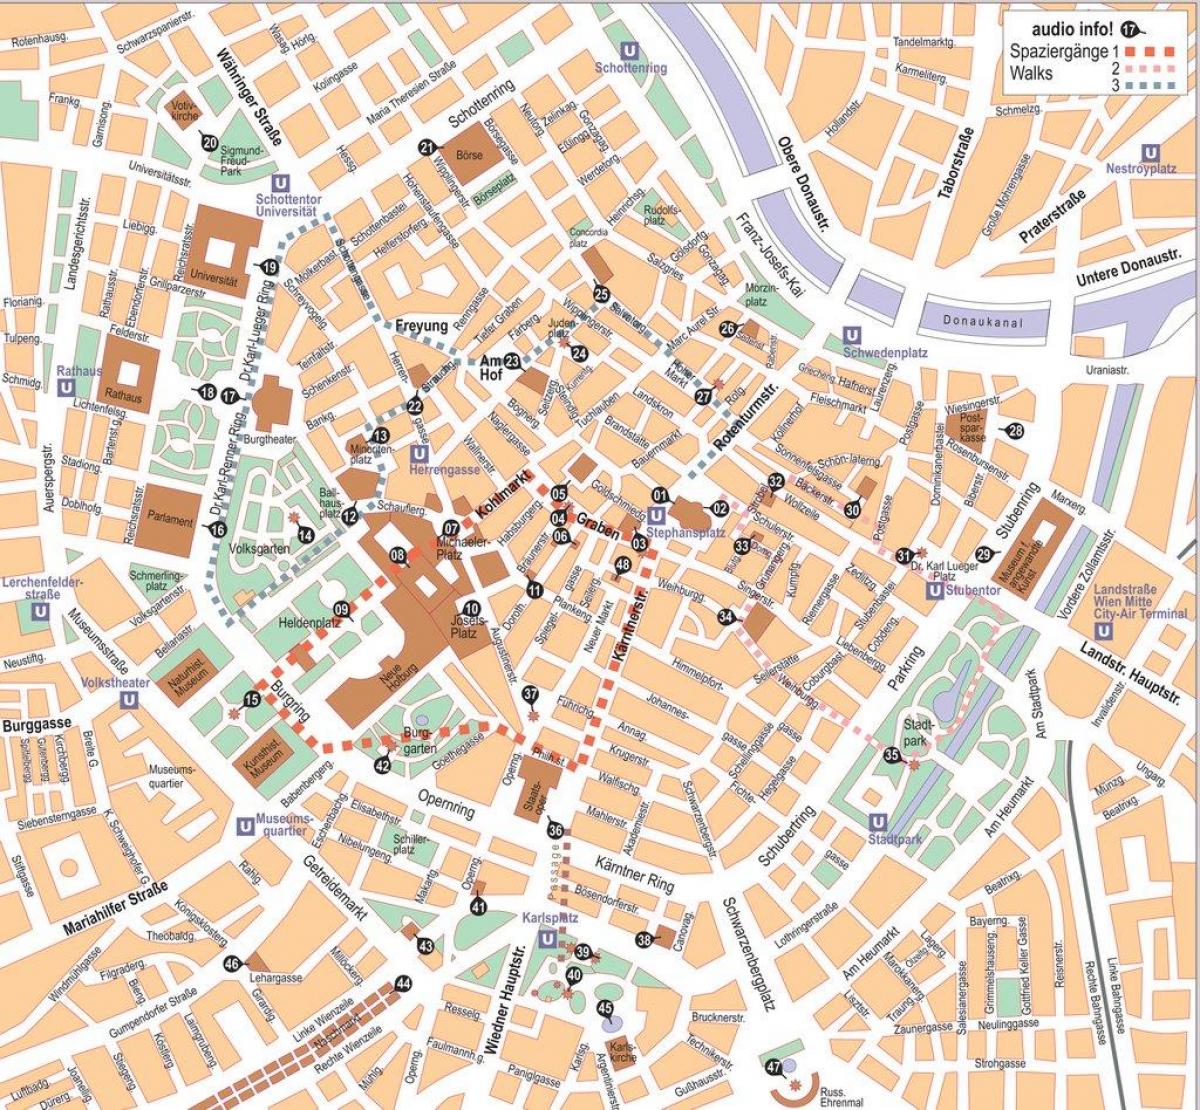 Mapa Wien zentroa